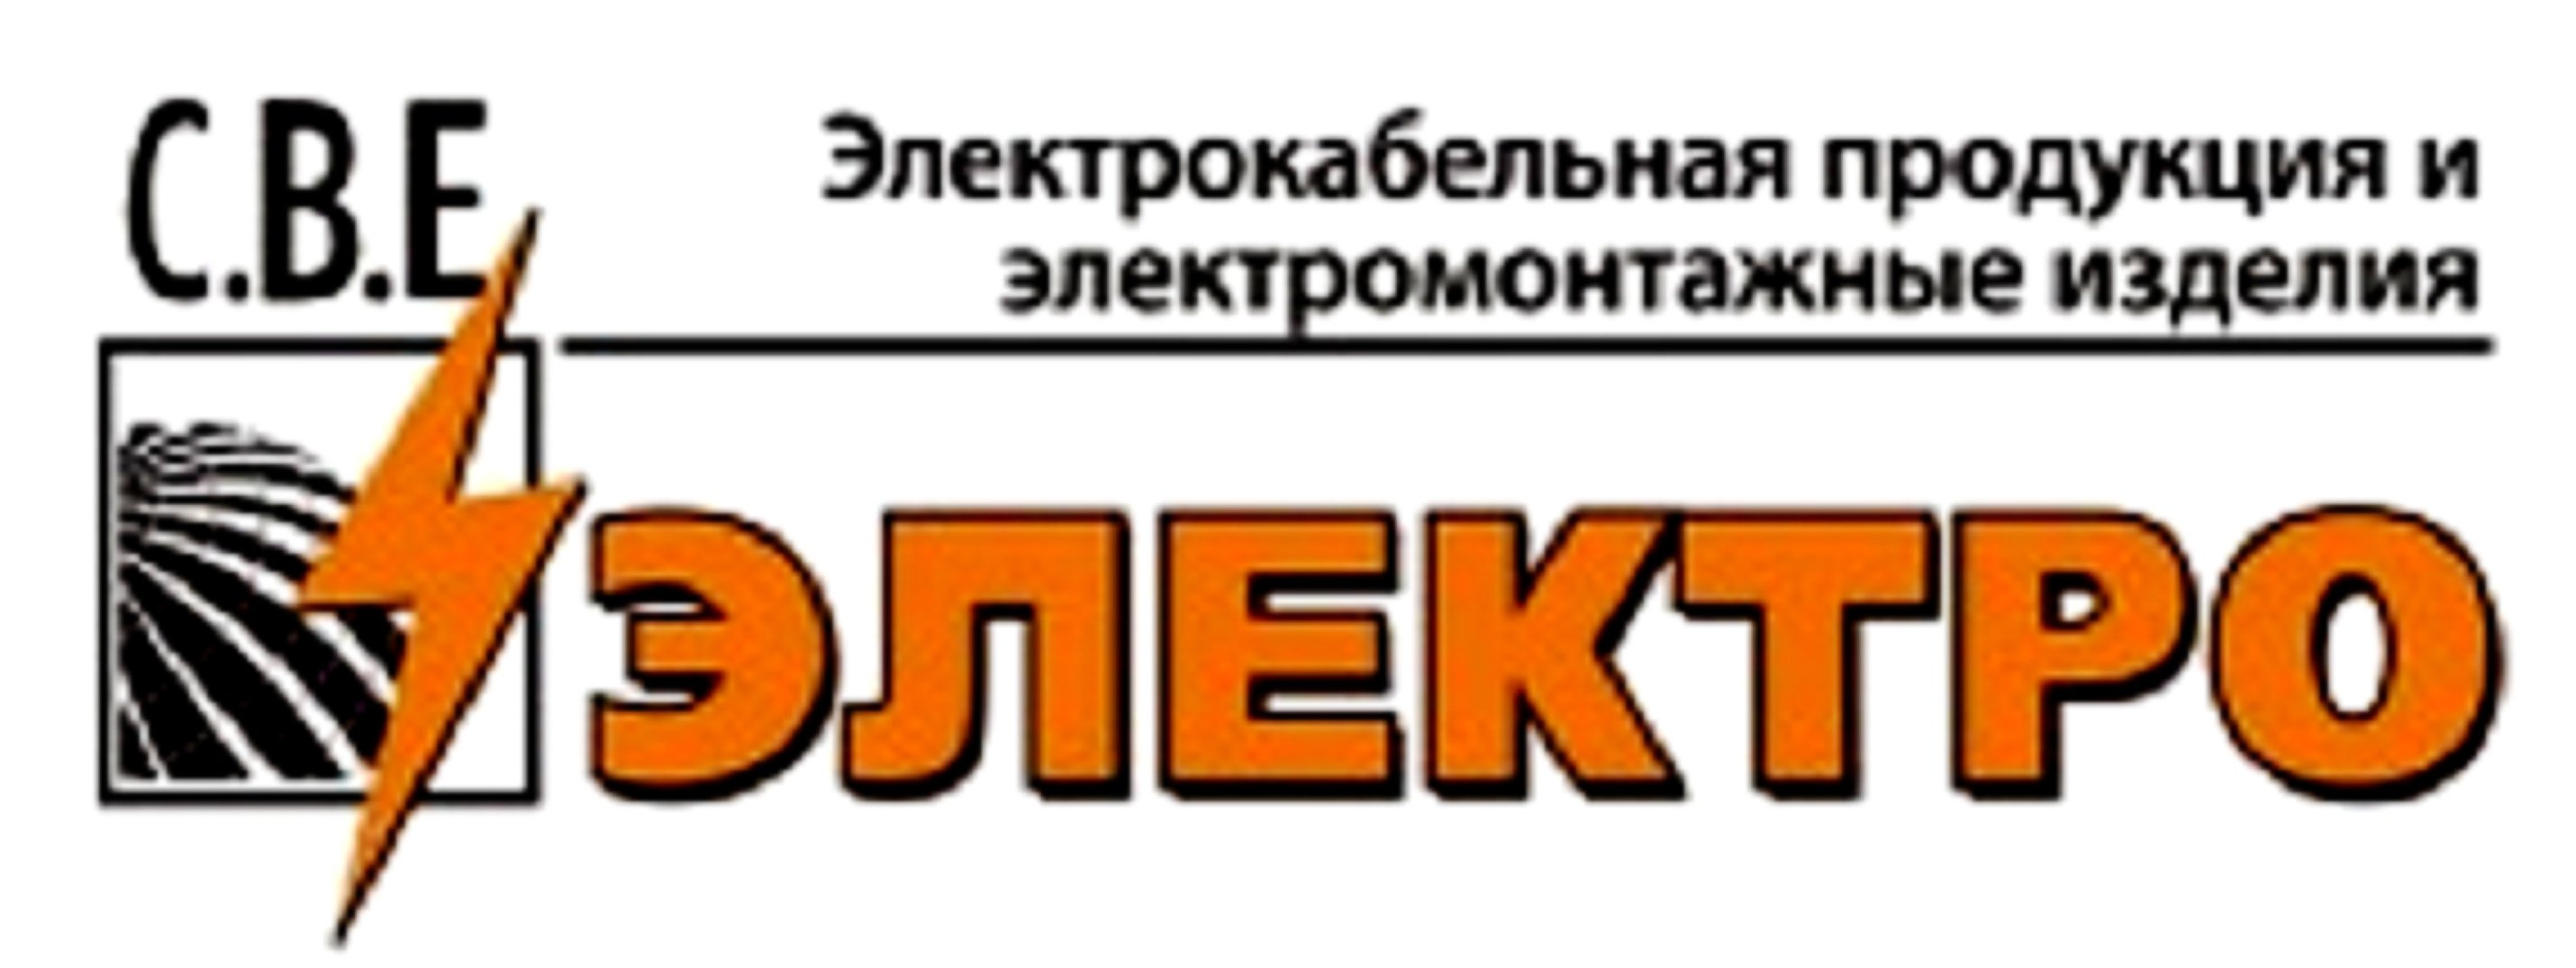 Ооо в е г. Электрокабельная продукция. Завод электрокабельной продукции logo. С.В.Е.электро Смоленск. Логотипы электромонтажных компаний.